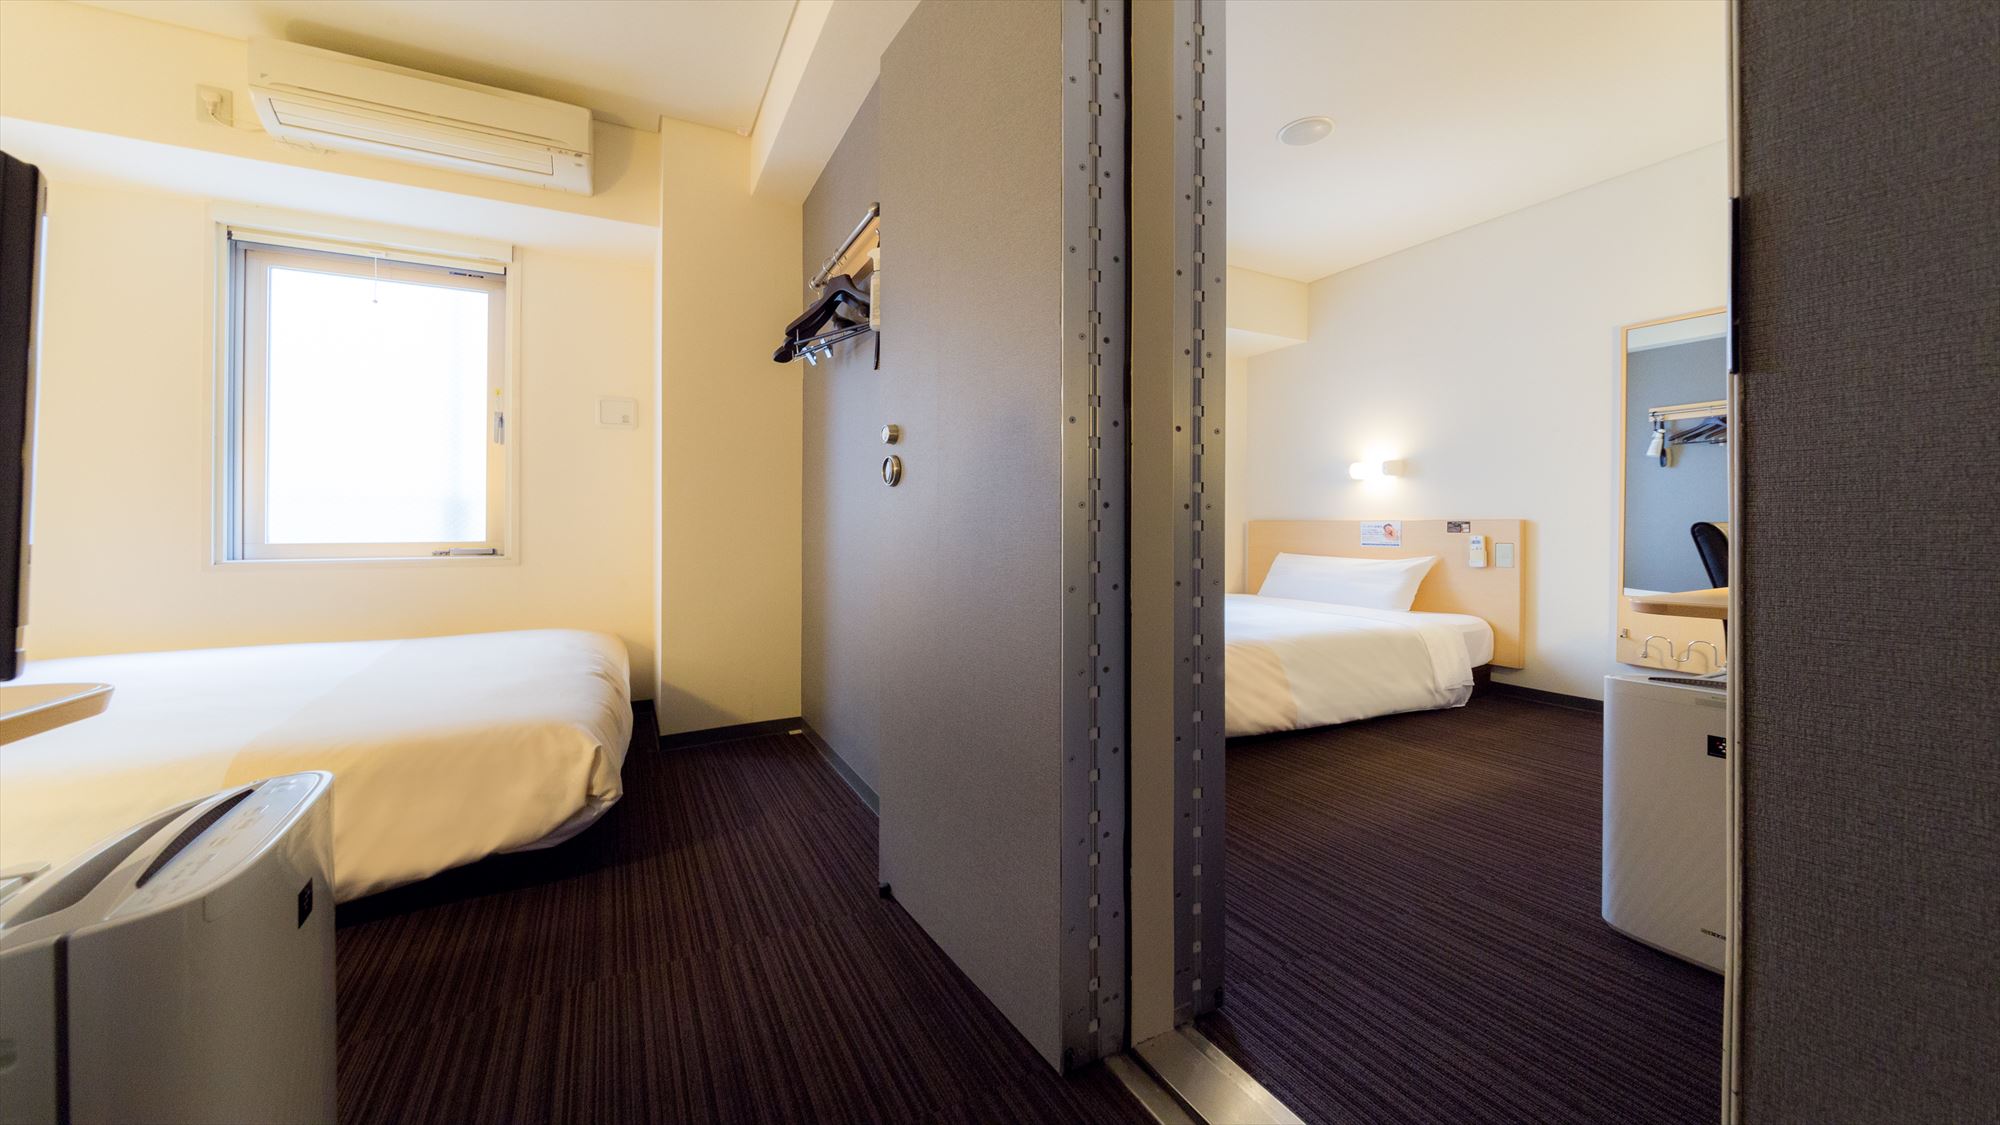 ダブルサイズのワイドベッドがあるスタンダードルームが２部屋繋がった【コネクティングルーム】です。